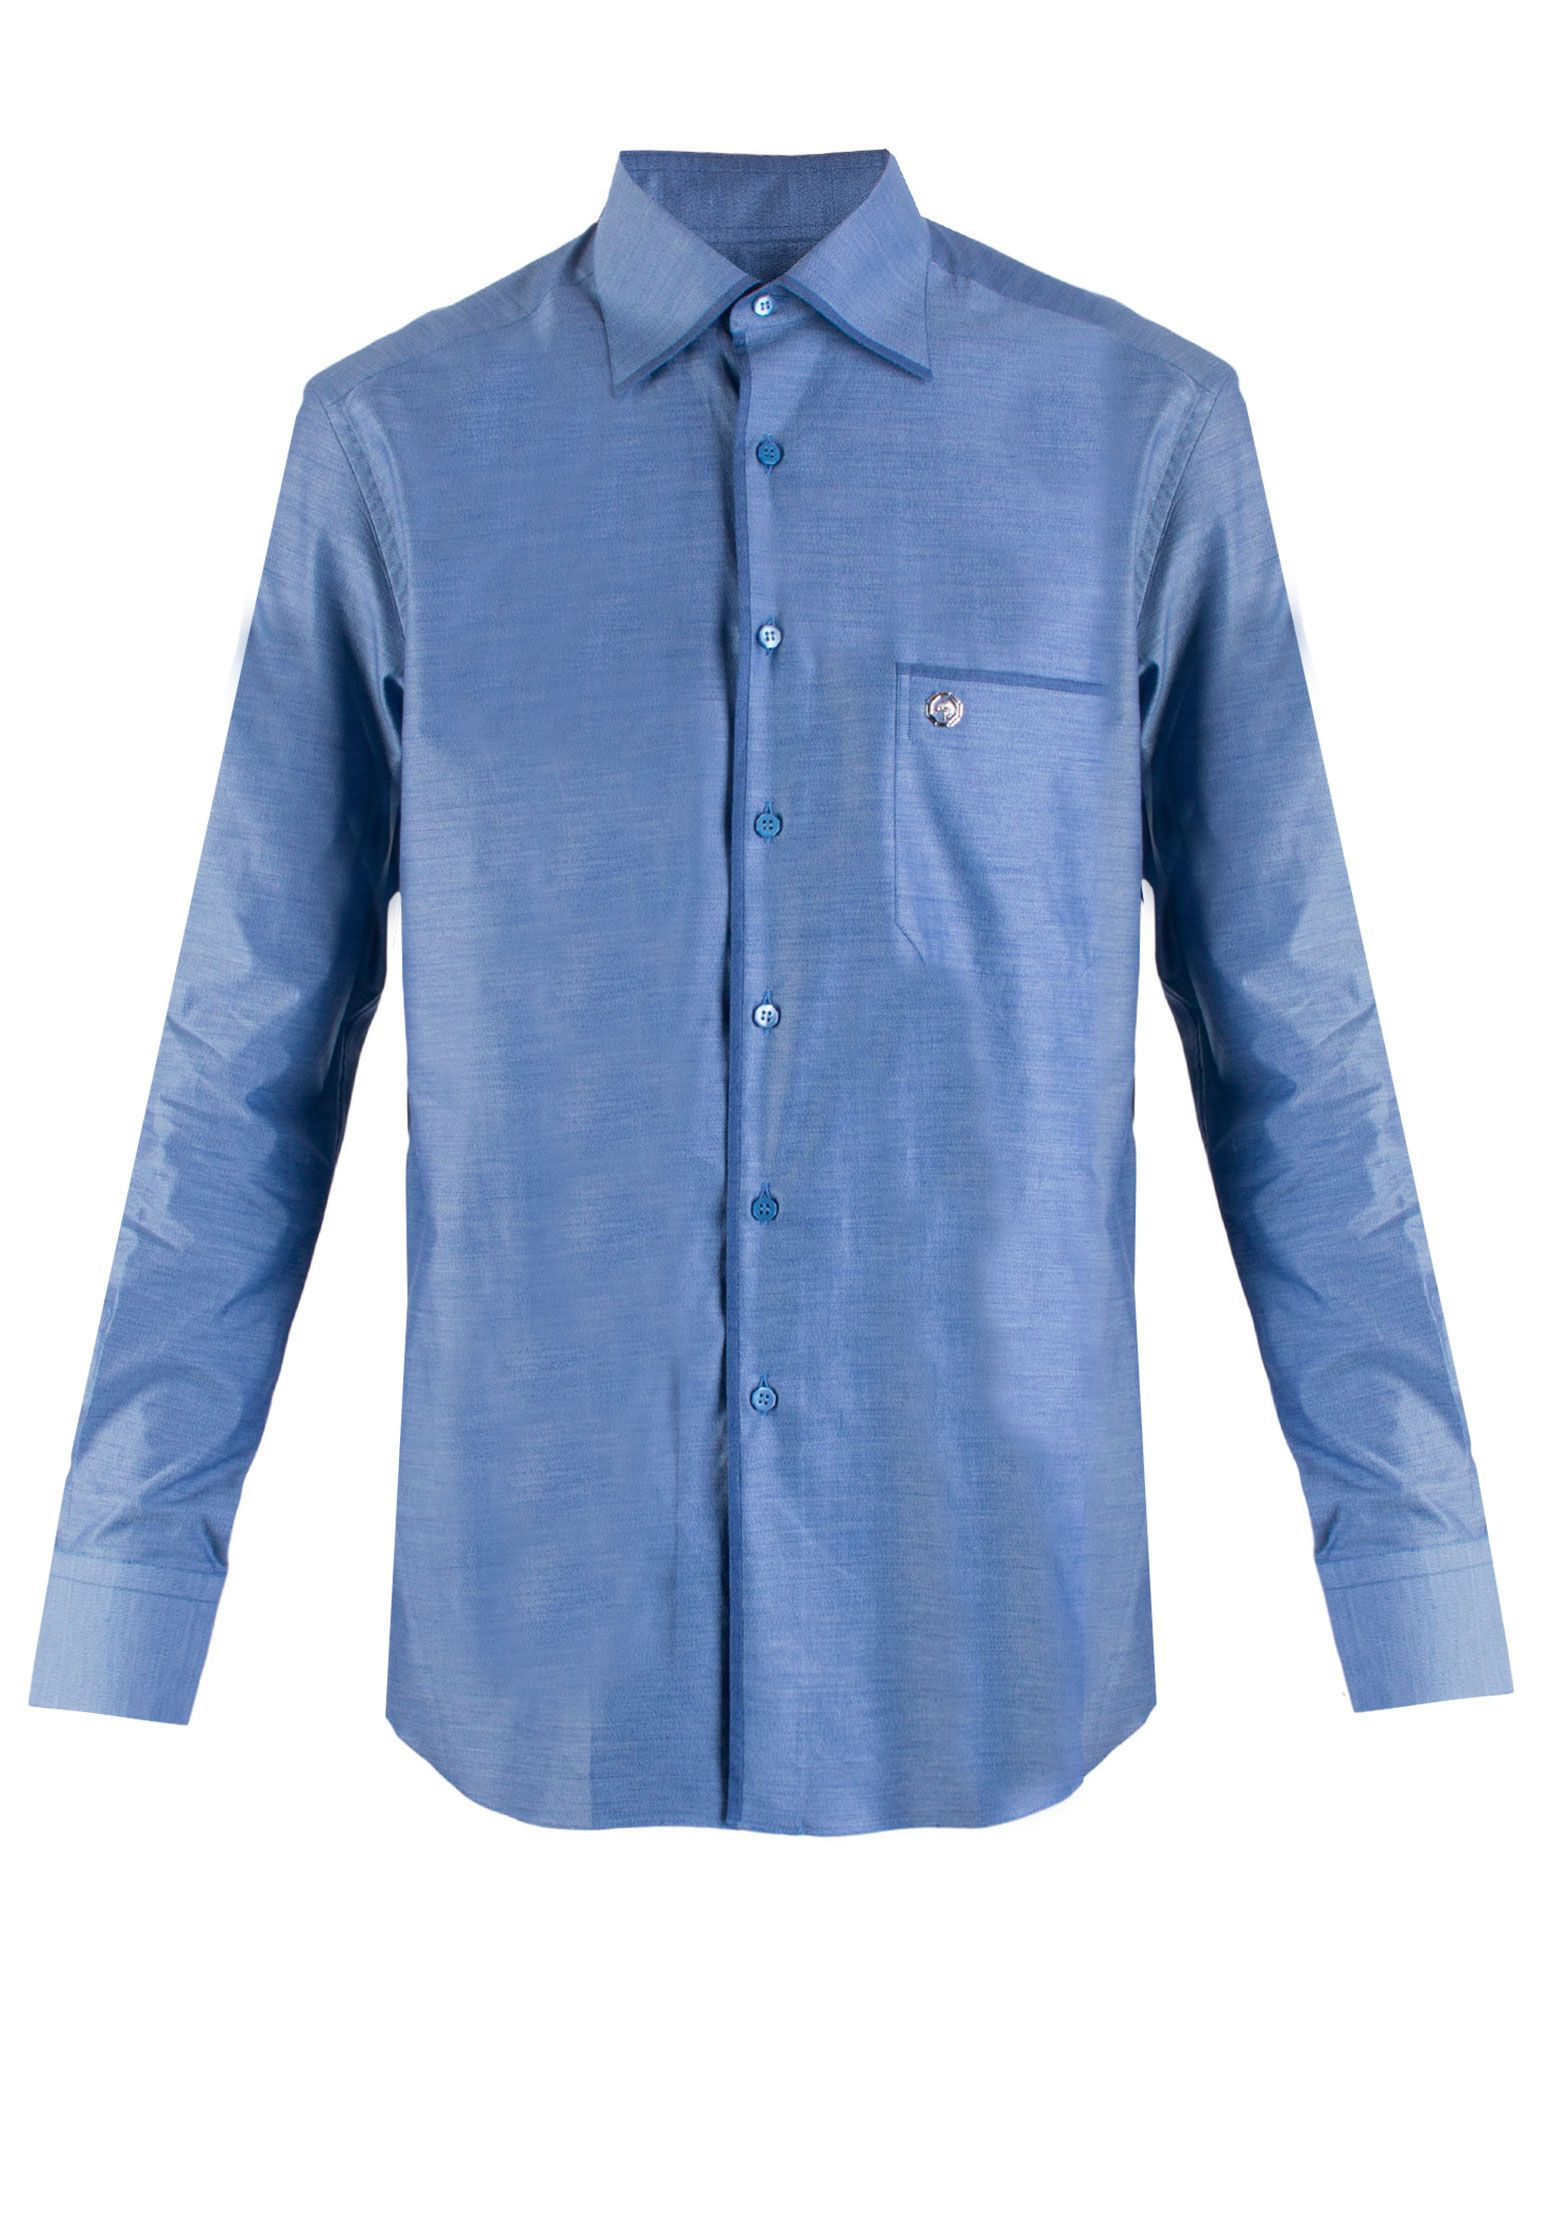 Хлопковая рубашка STEFANO RICCI Голубой, размер 39 86227 - фото 1